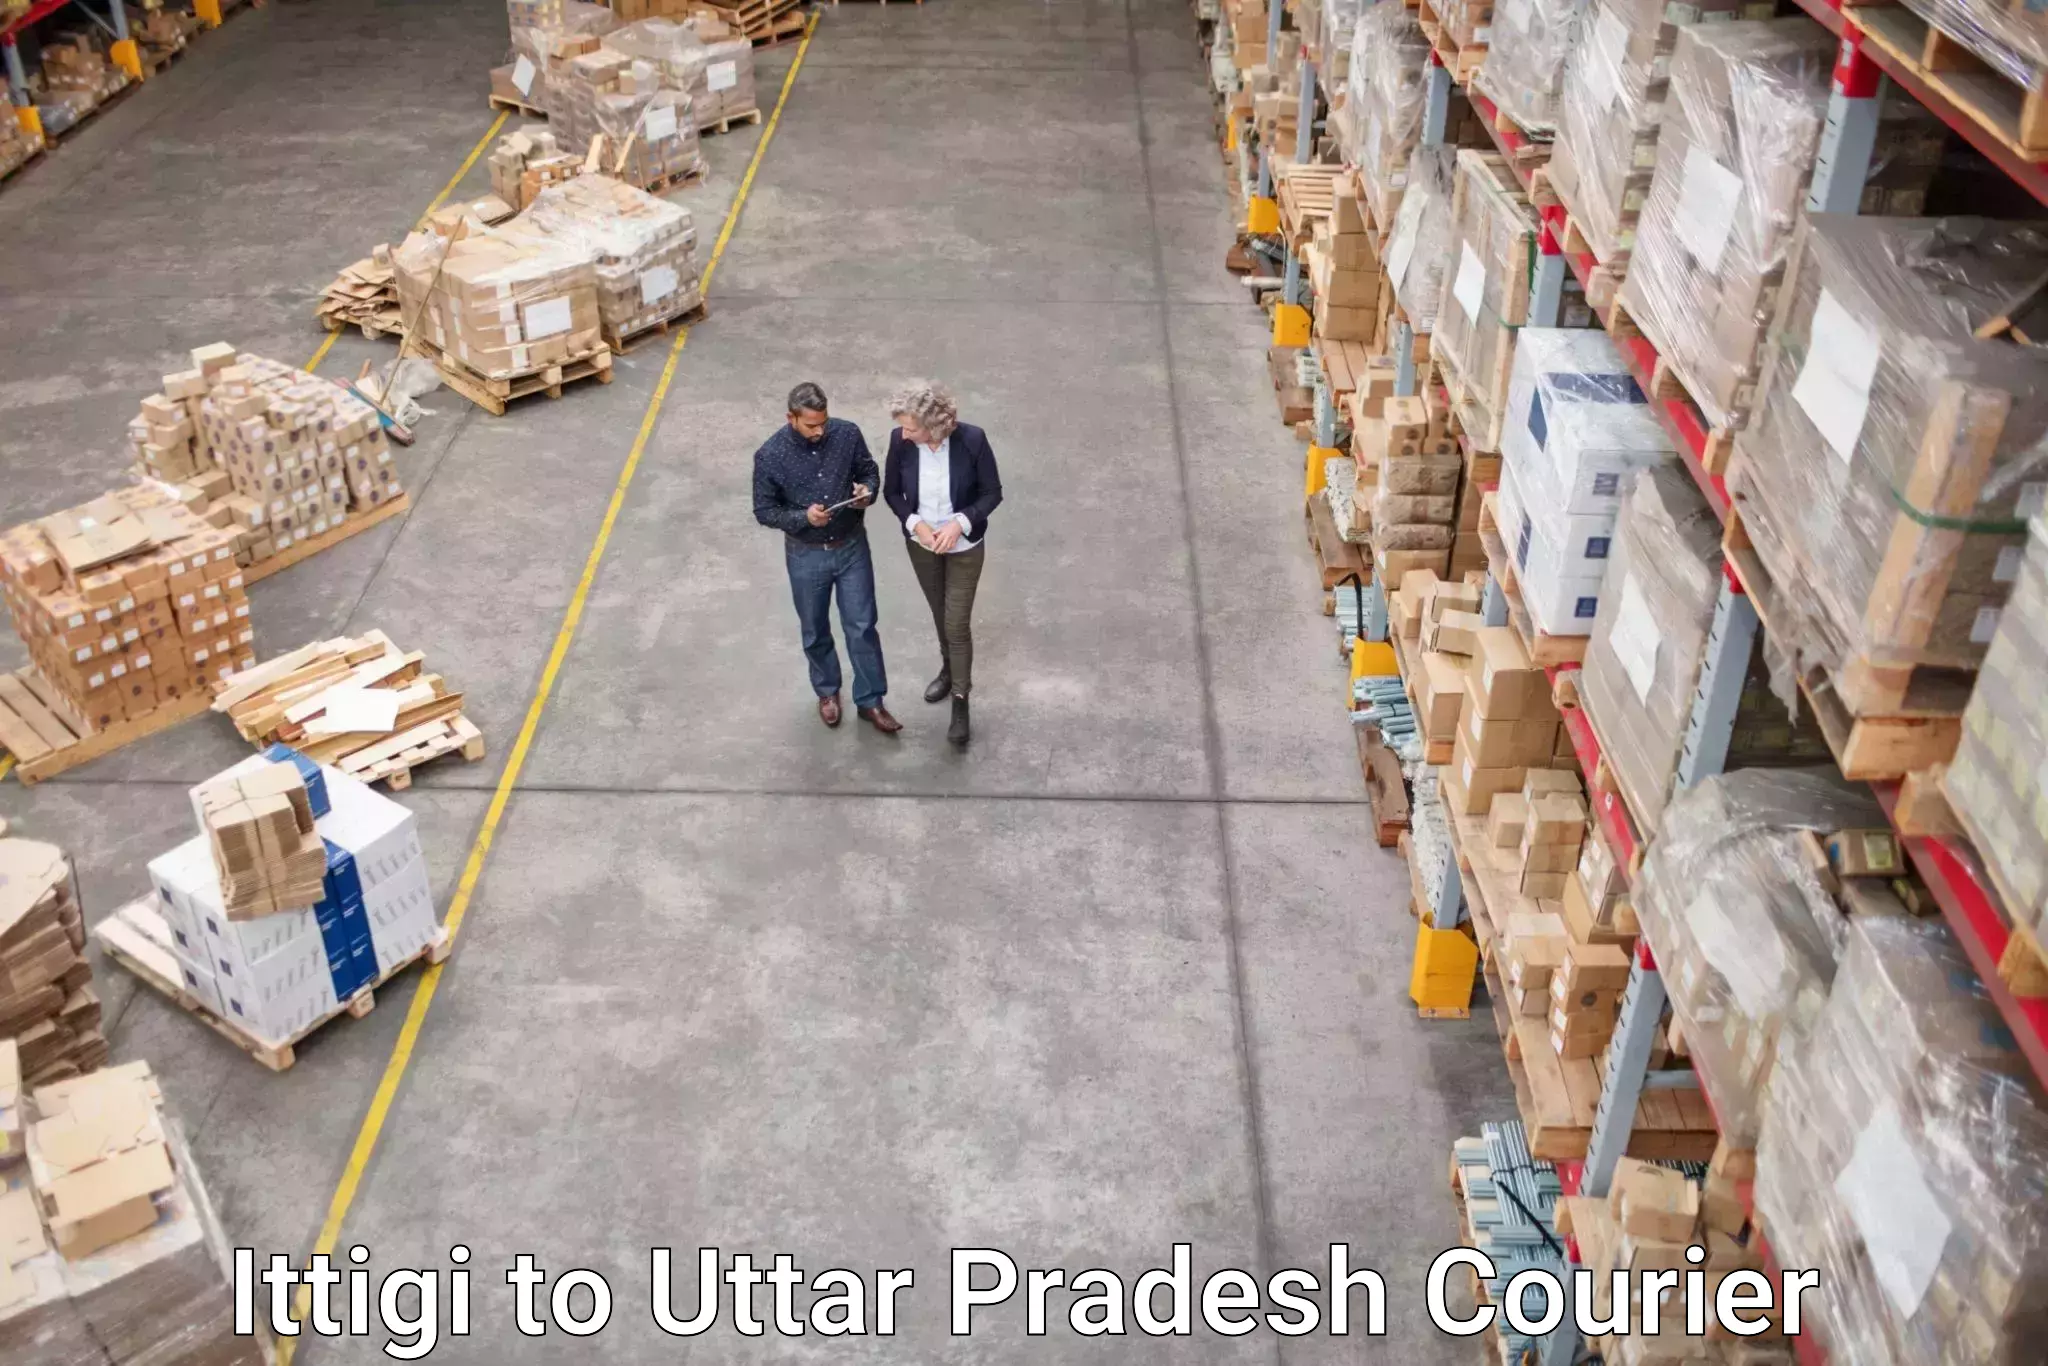 Local delivery service Ittigi to Ambuj Nagar